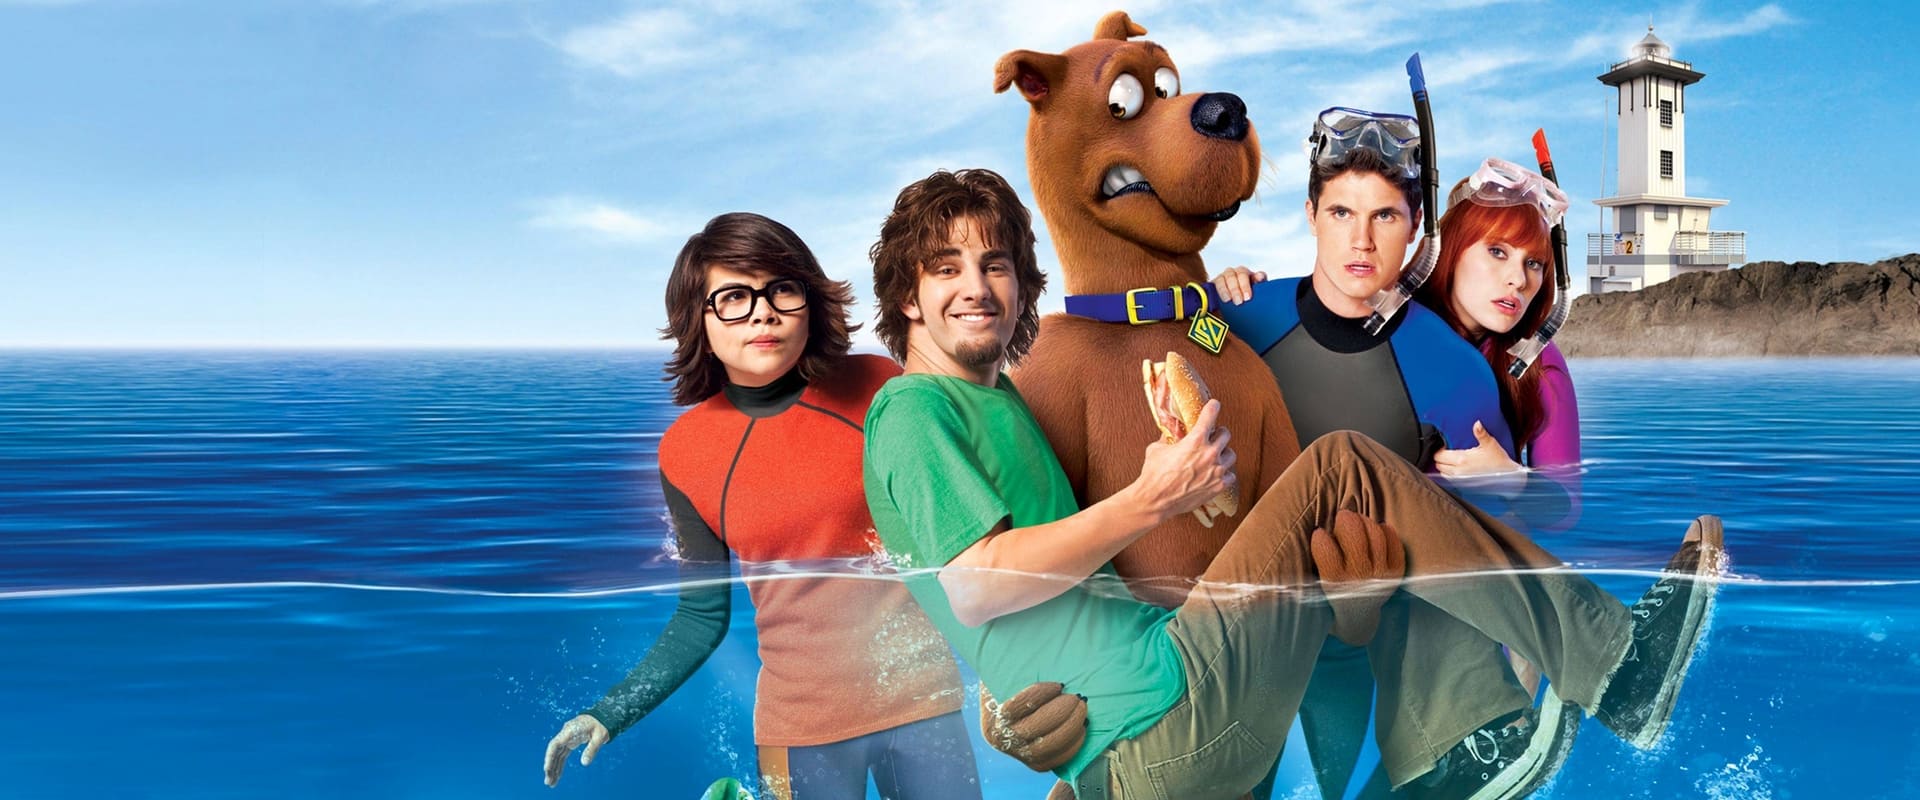 Scooby Doo: Göl Canavarının Laneti